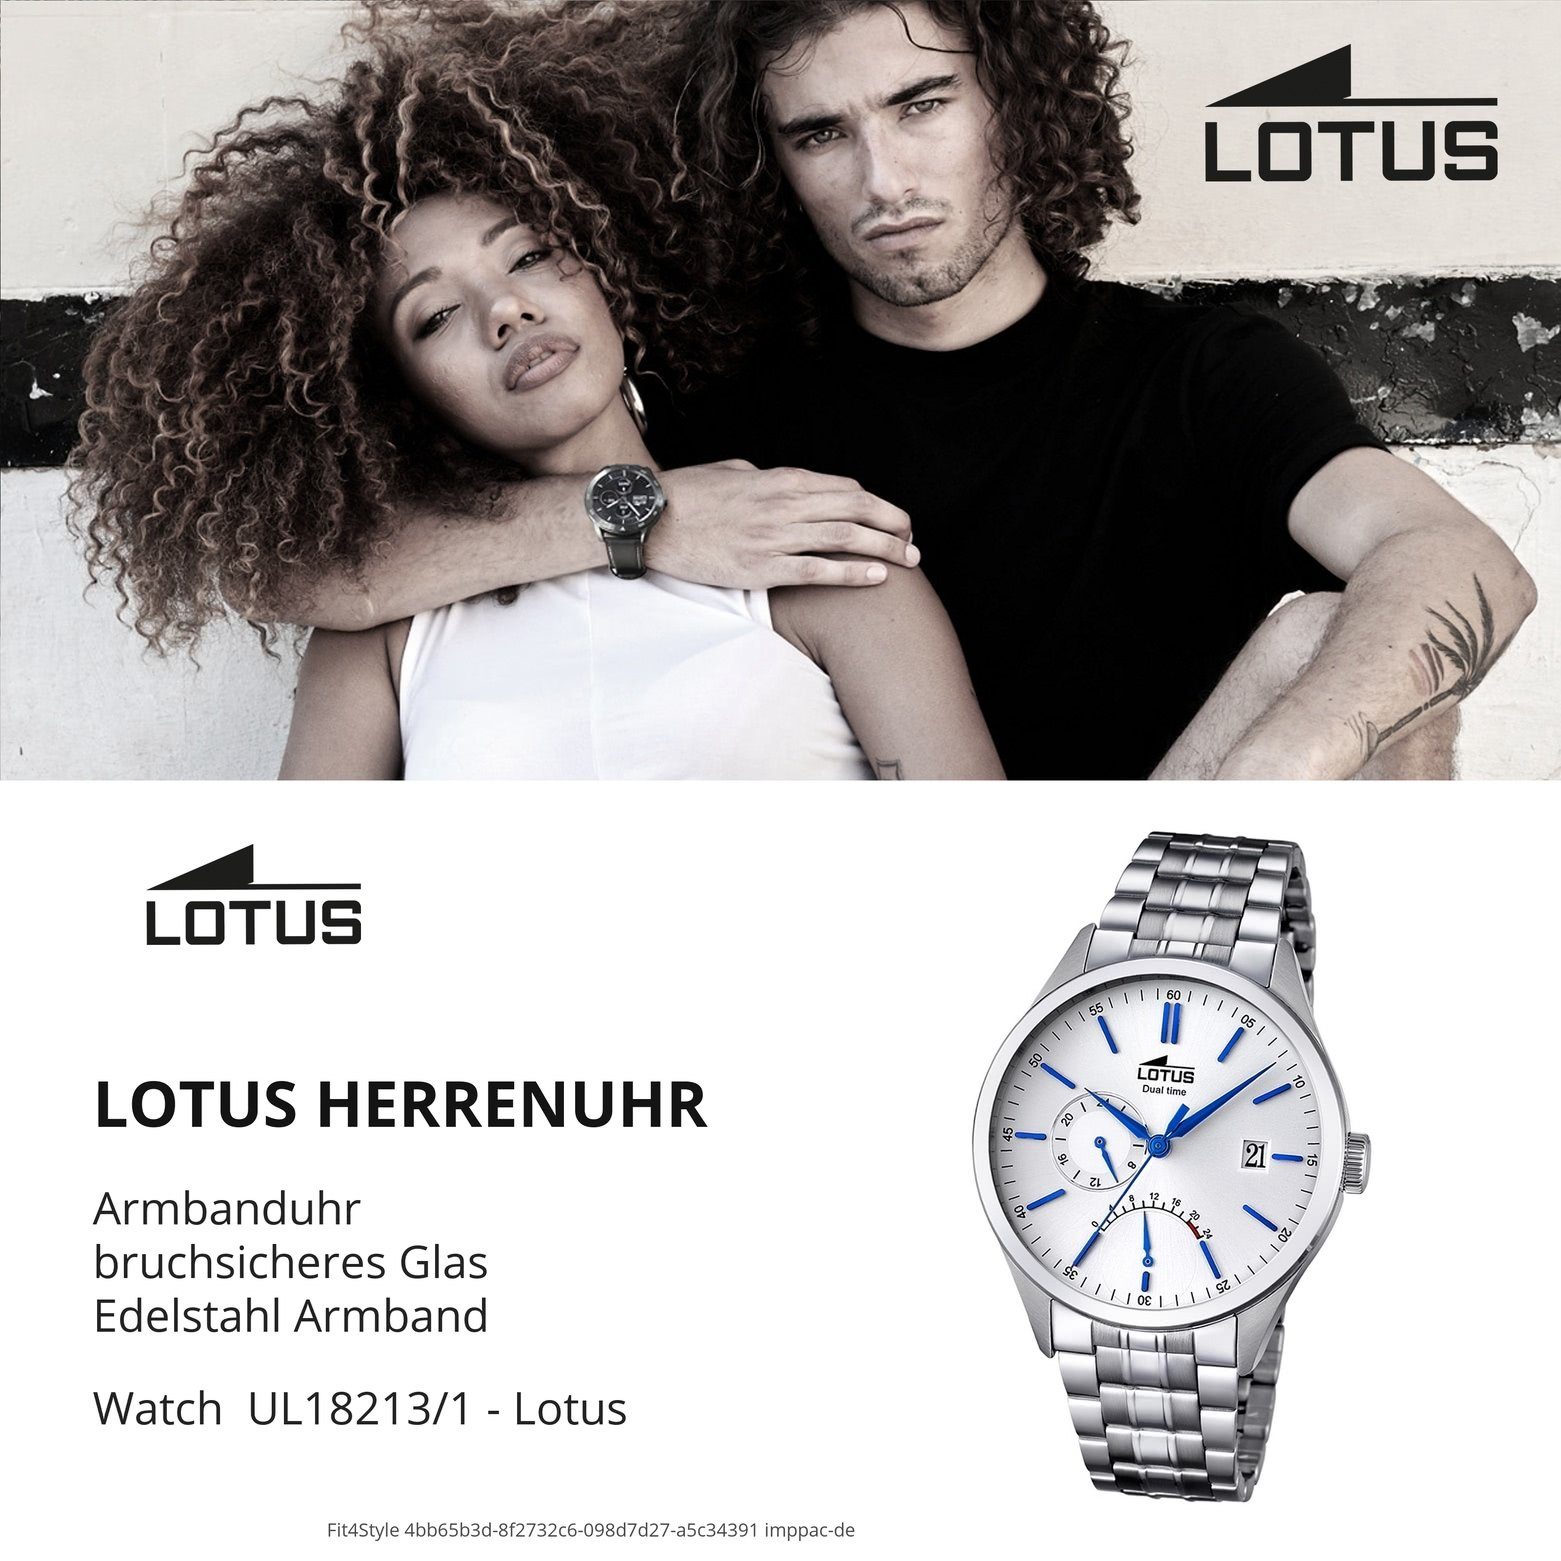 Lotus (ca. Multifunktionsuhr Lotus silber 42mm), rund, Edelstahlarmband Herren Herren L18213/1, groß Armbanduhr Elegant Uhr